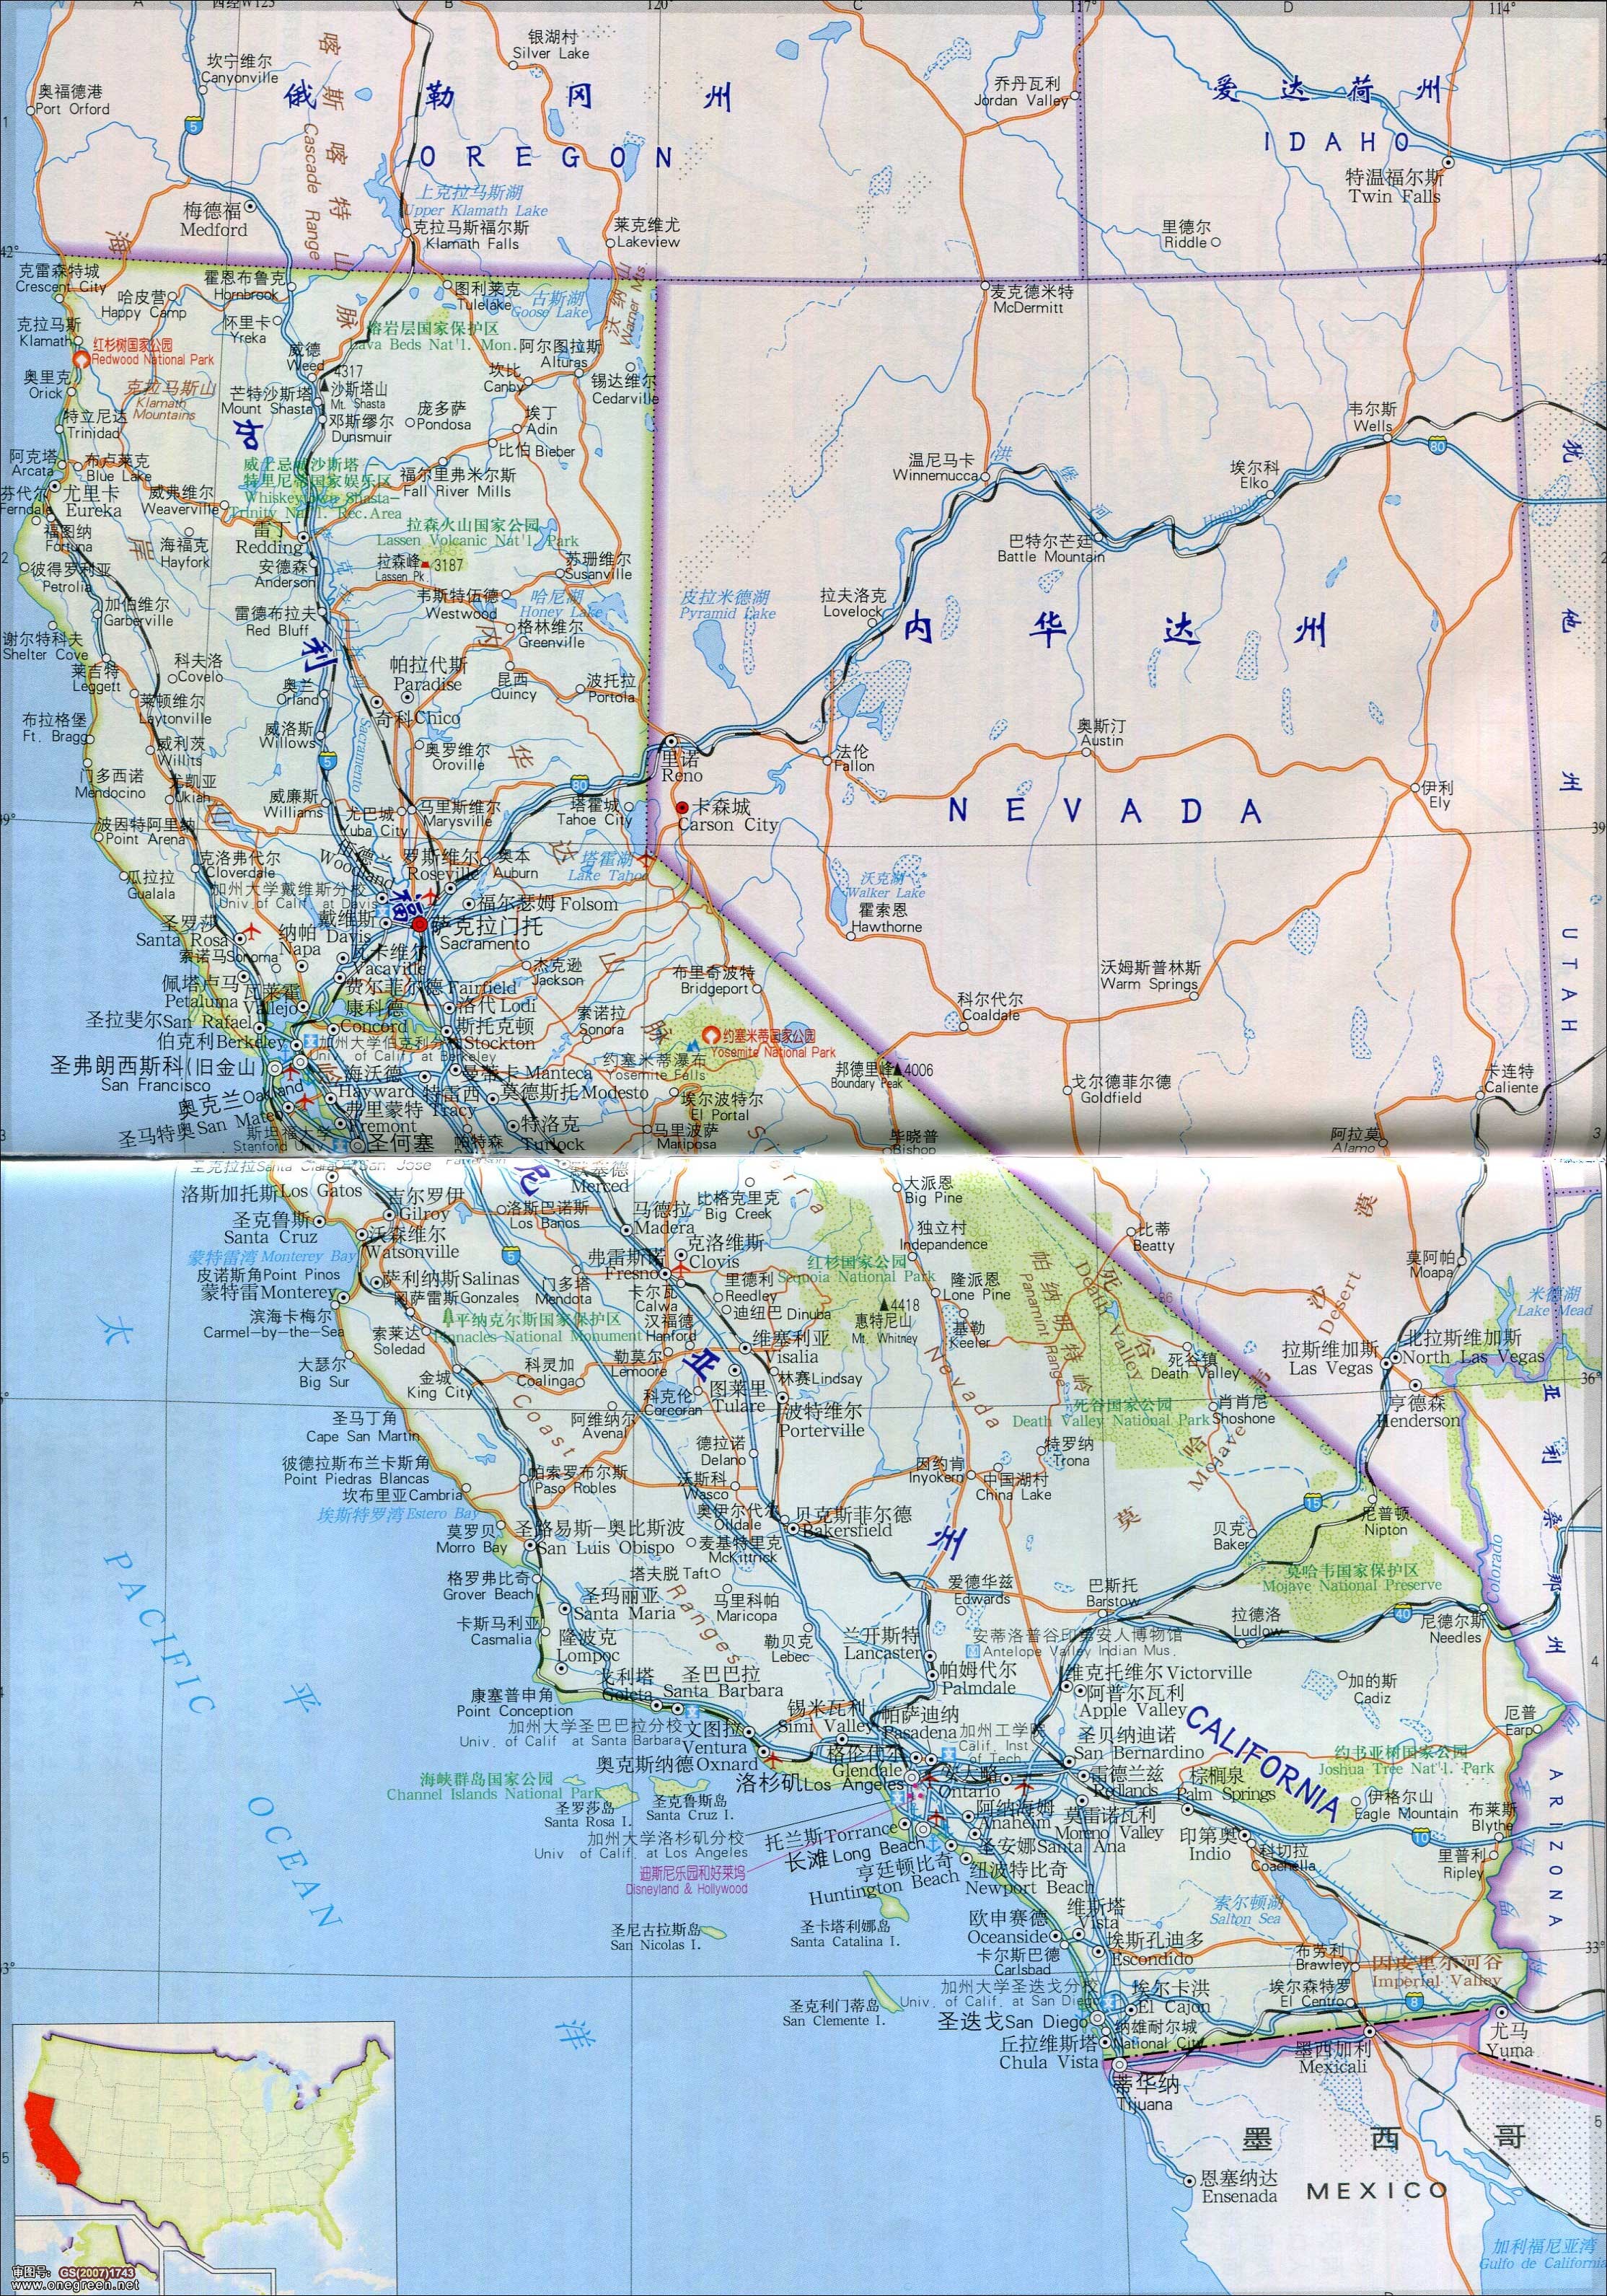 加利福尼亚州地图_美国地图库_地图窝